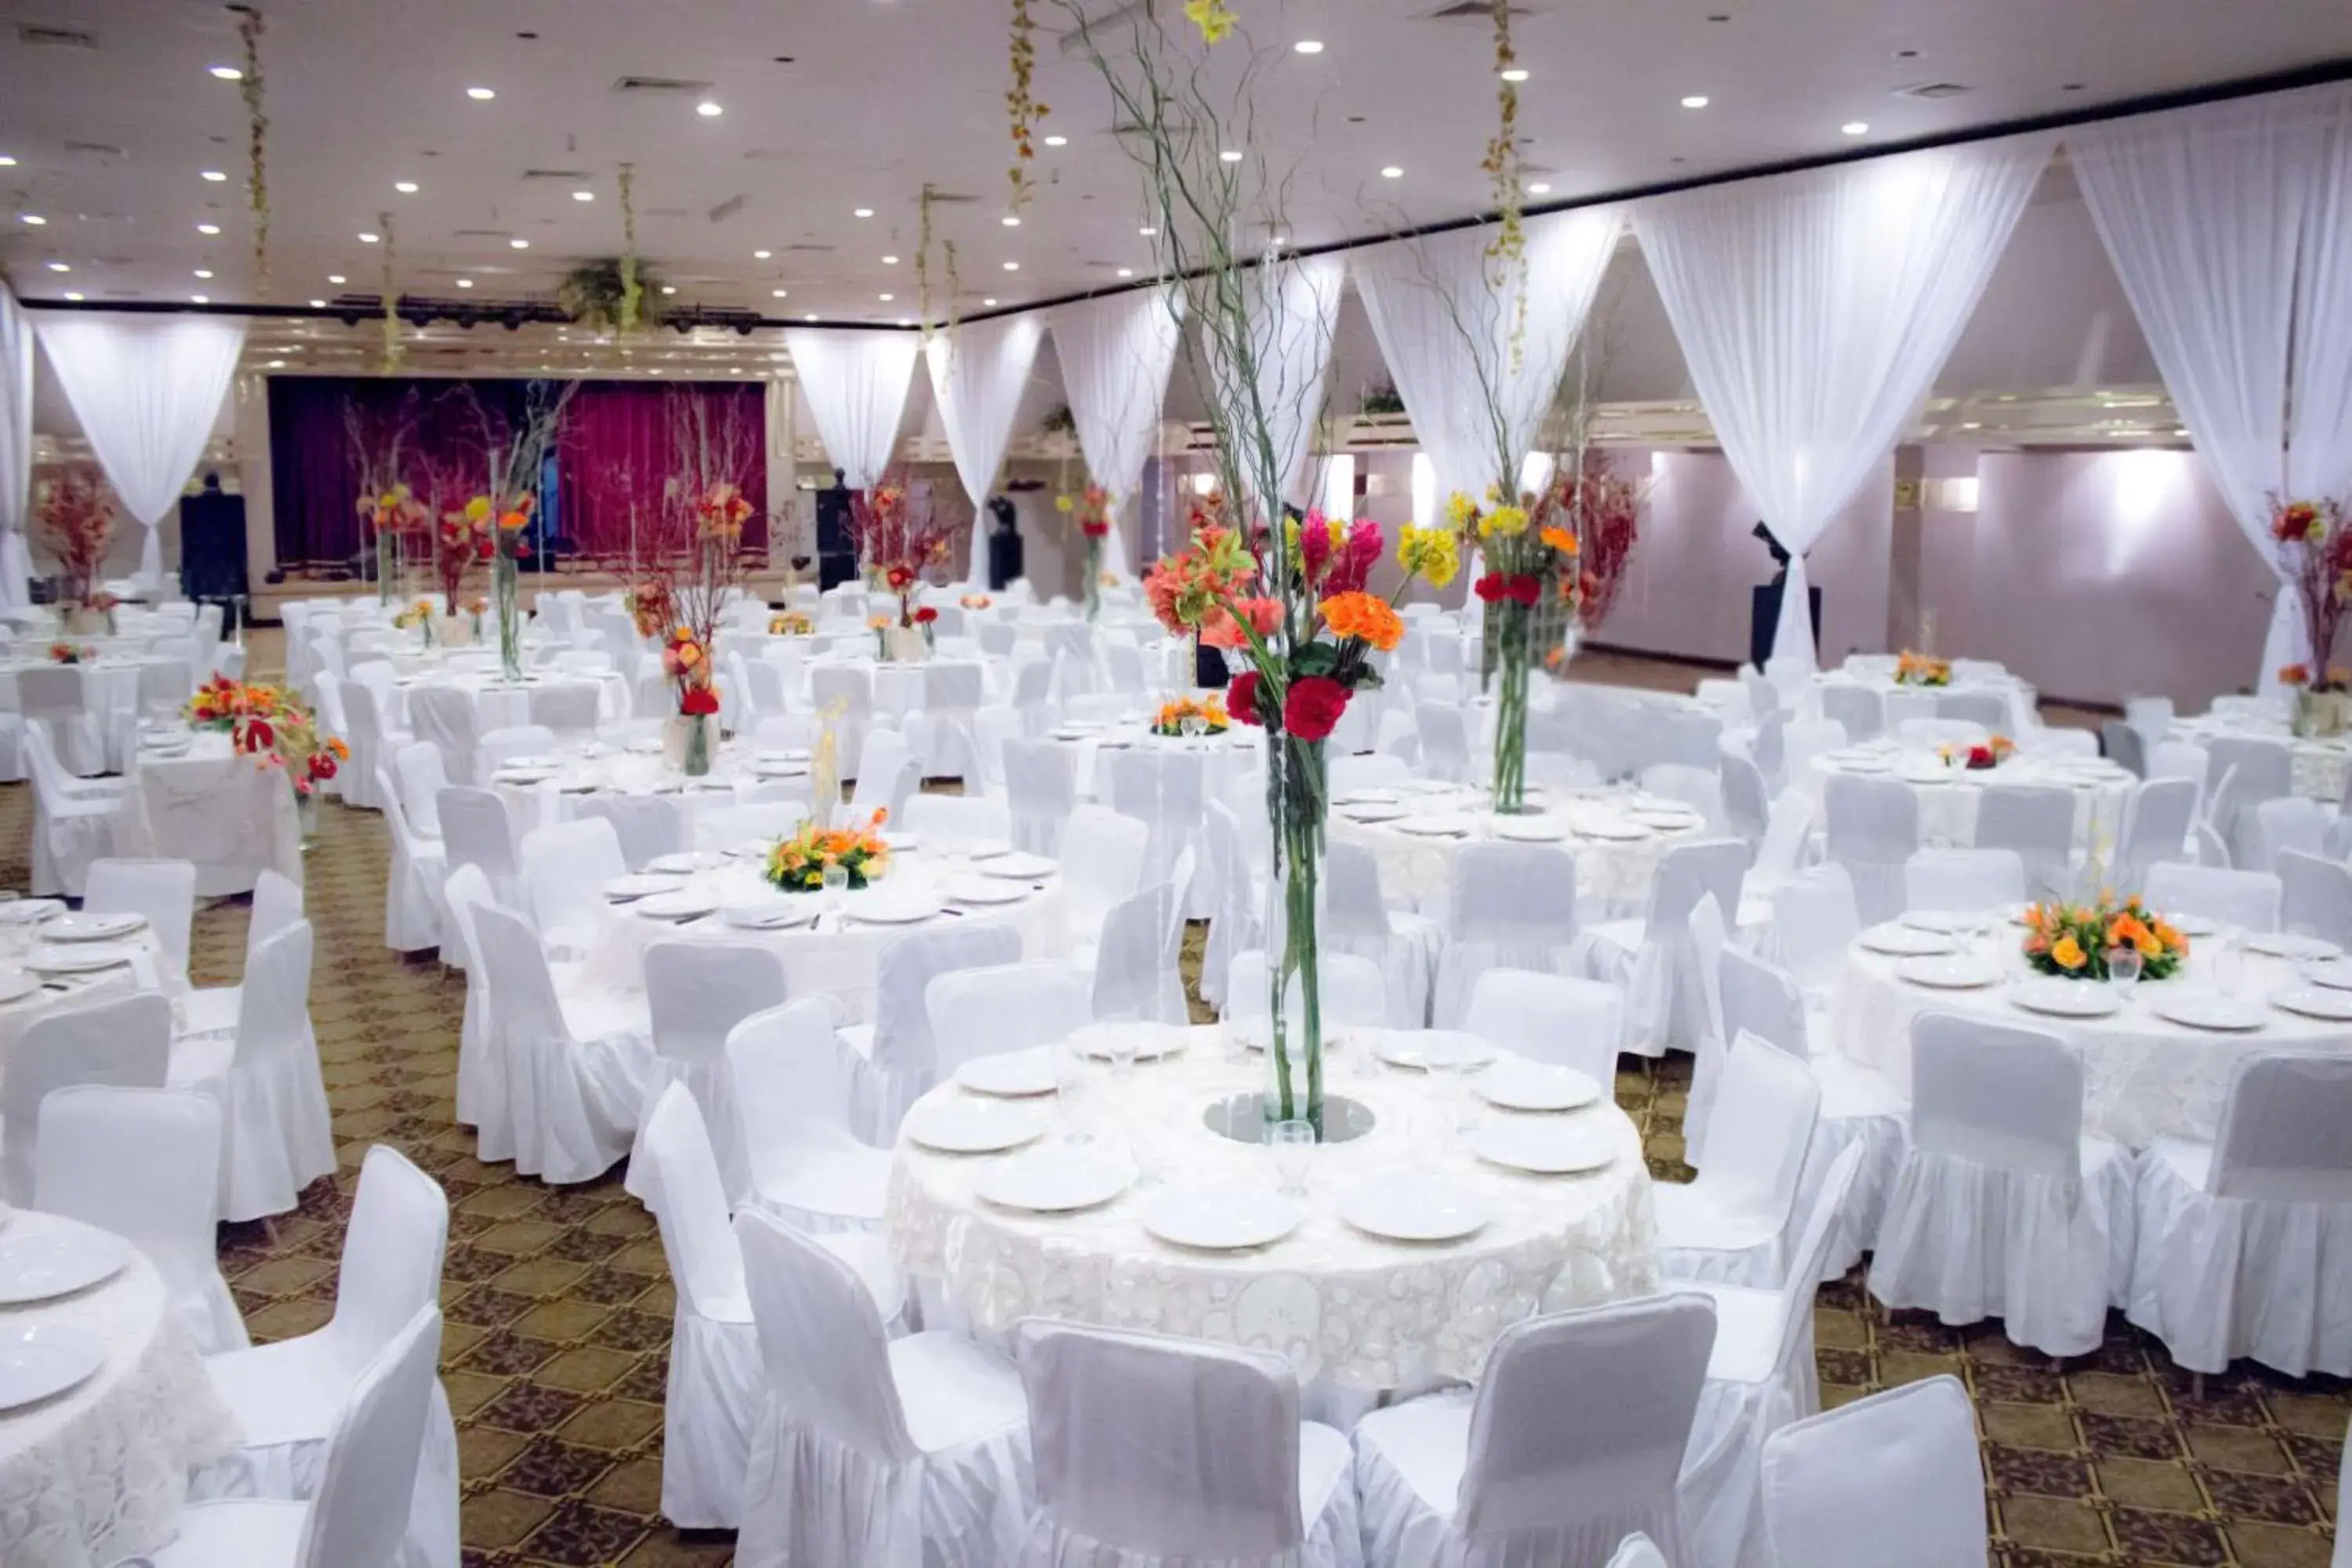 Banquet/Function facilities, Banquet Facilities in HM Mirador